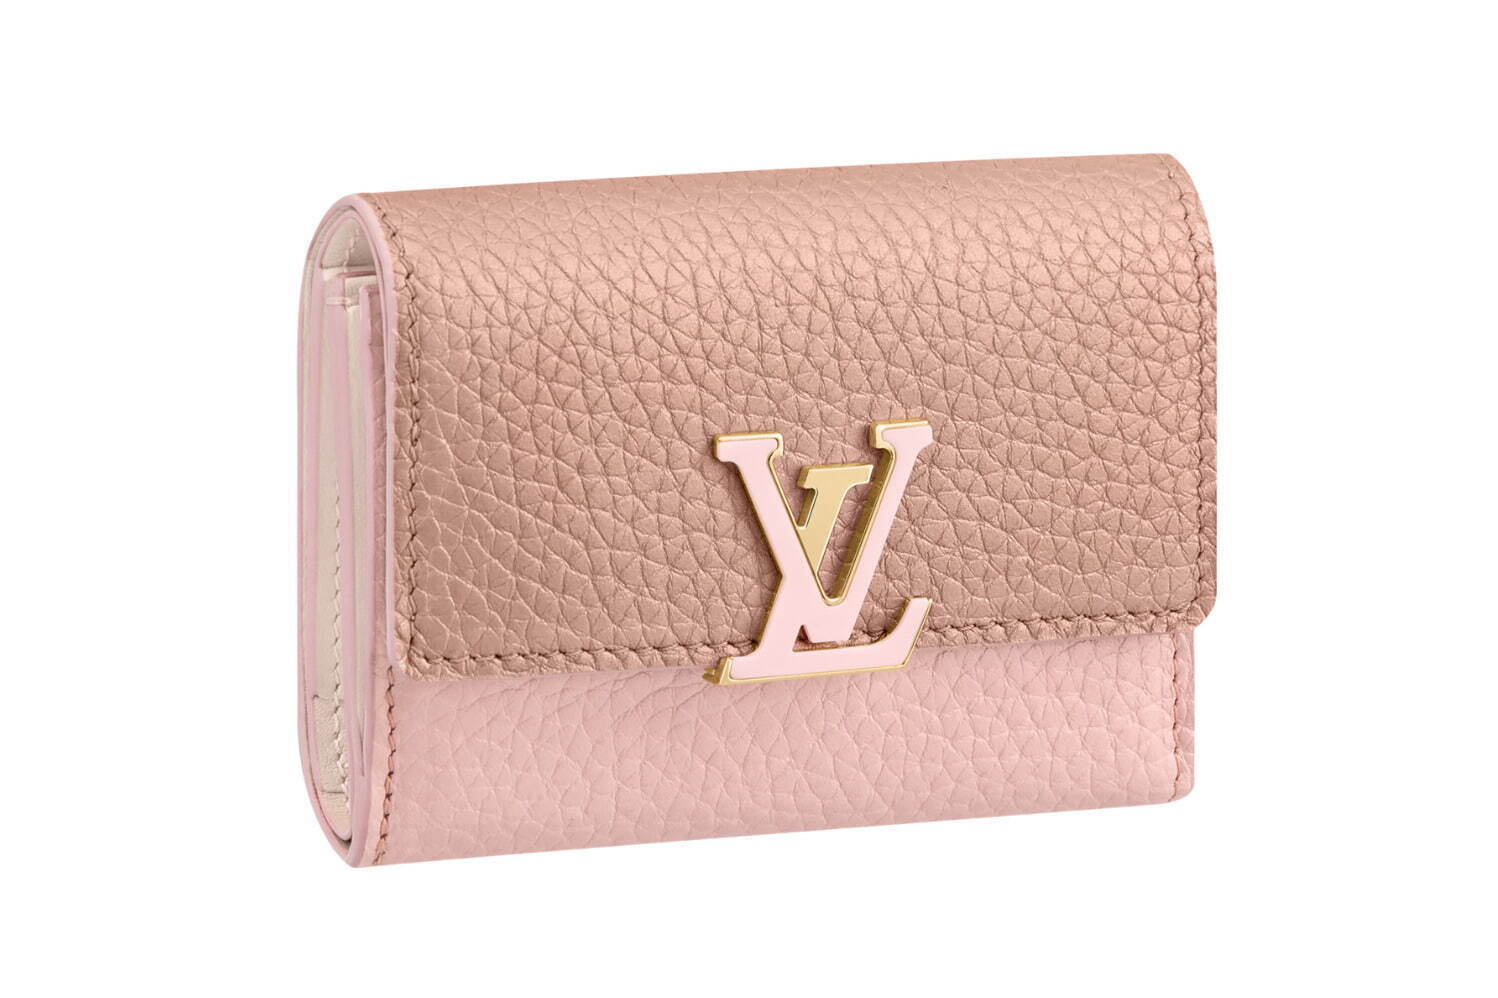 人気ブランド「ピンクレザーグッズ特集」“おしゃれ＆かわいい”財布・バッグなど、プレゼントにもおすすめ ファッションプレス